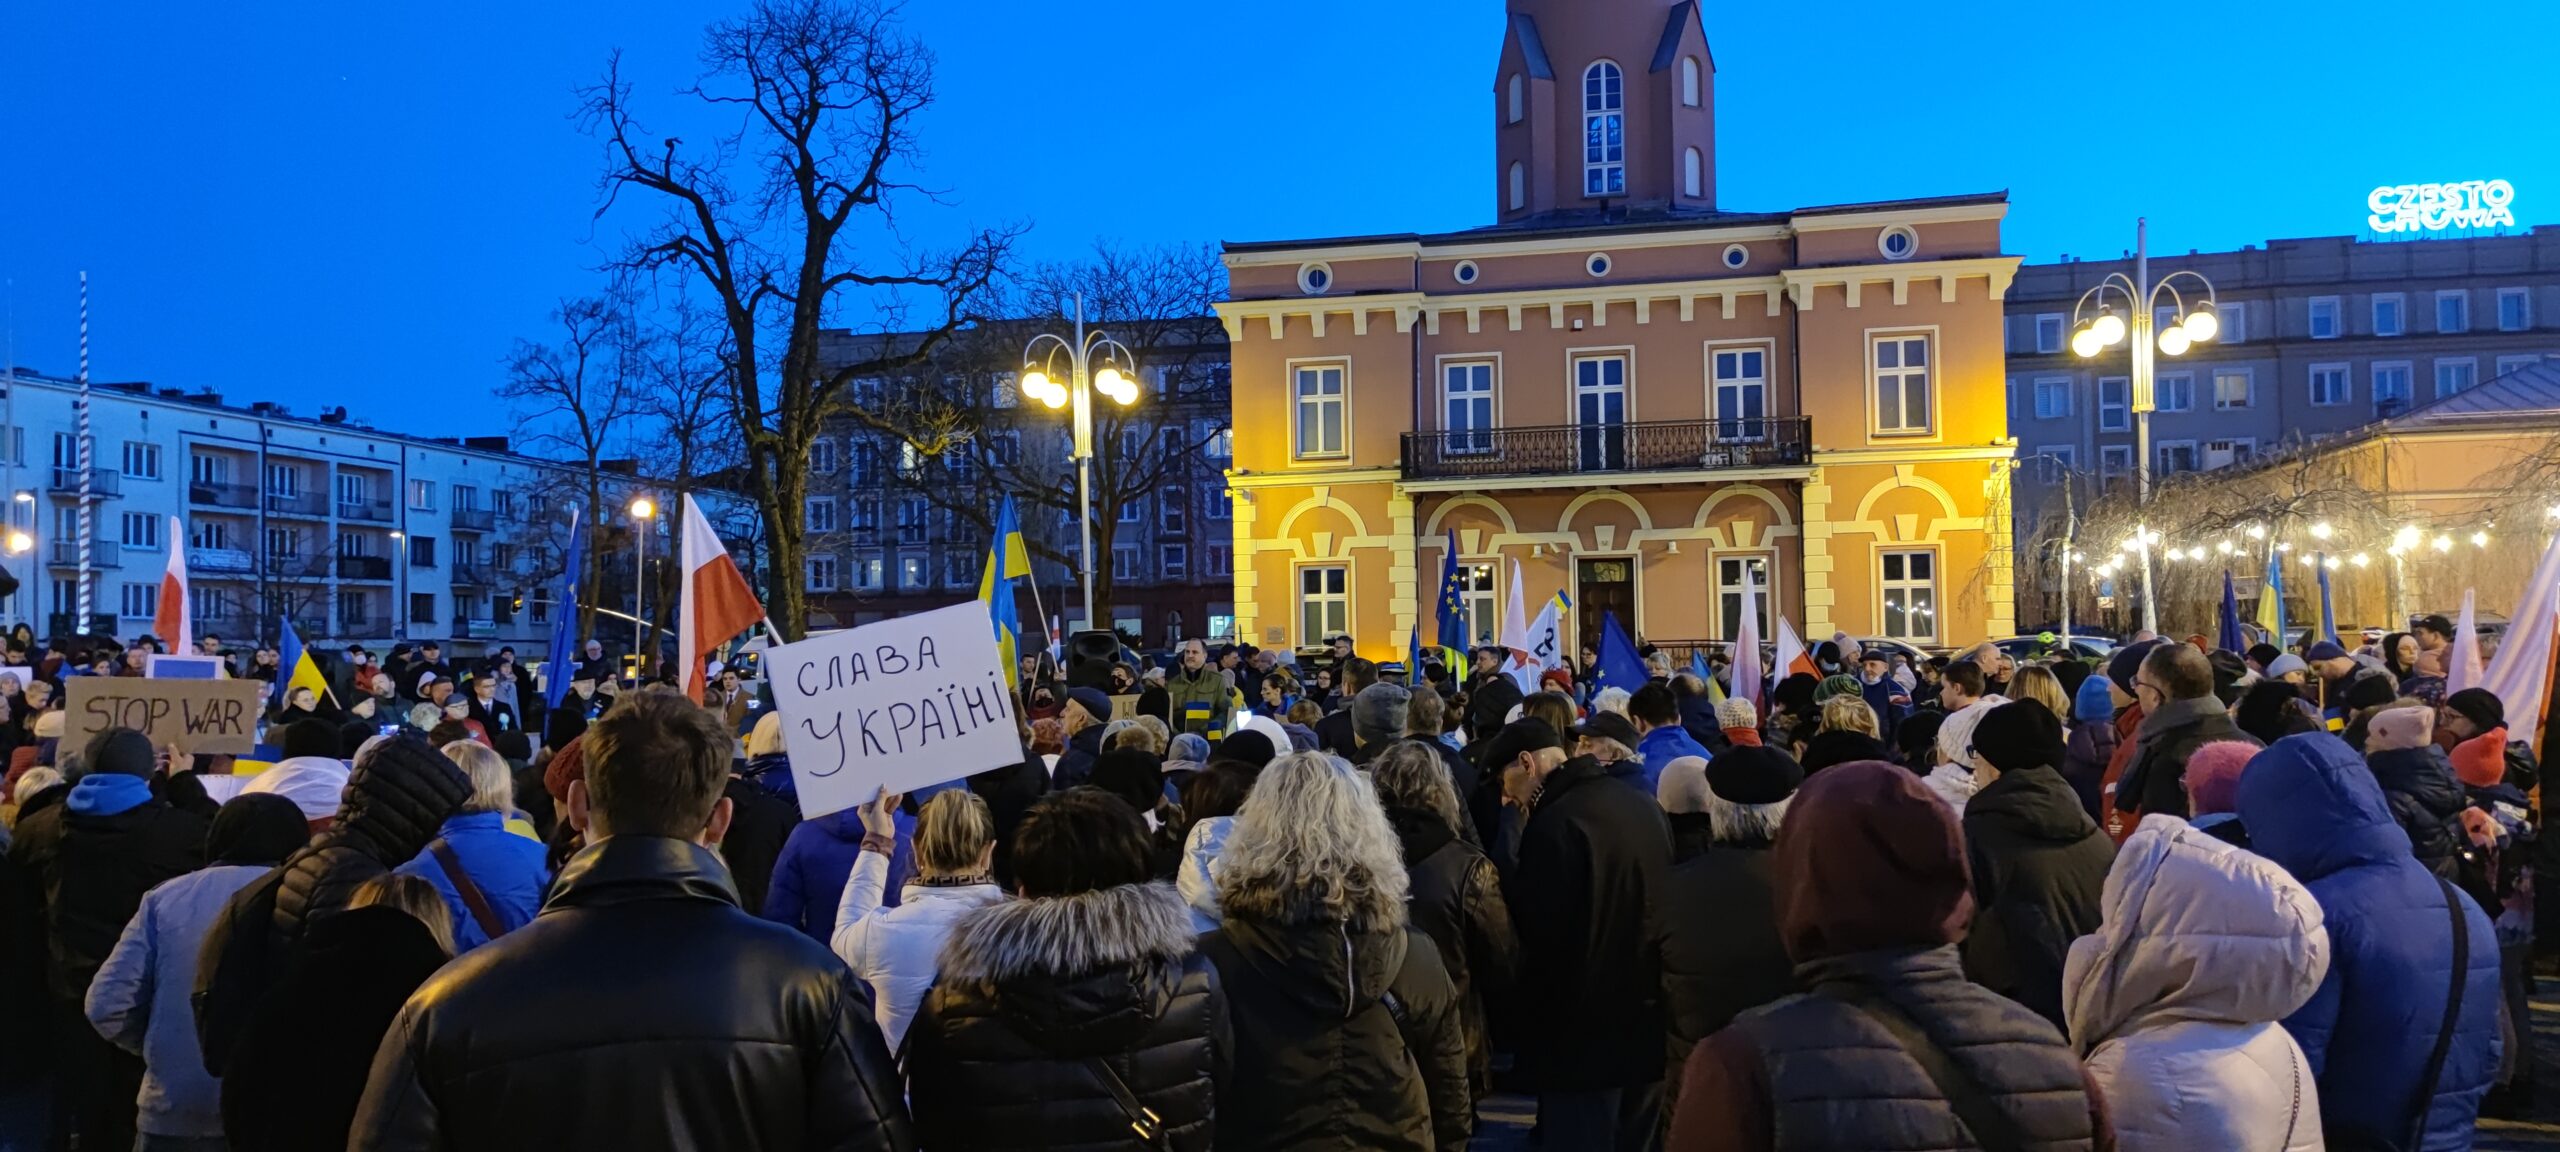 Częstochowski manifest solidarności z Ukrainą. "Precz z Putinem!" - wołano tłumnie na pl. Biegańskiego 7